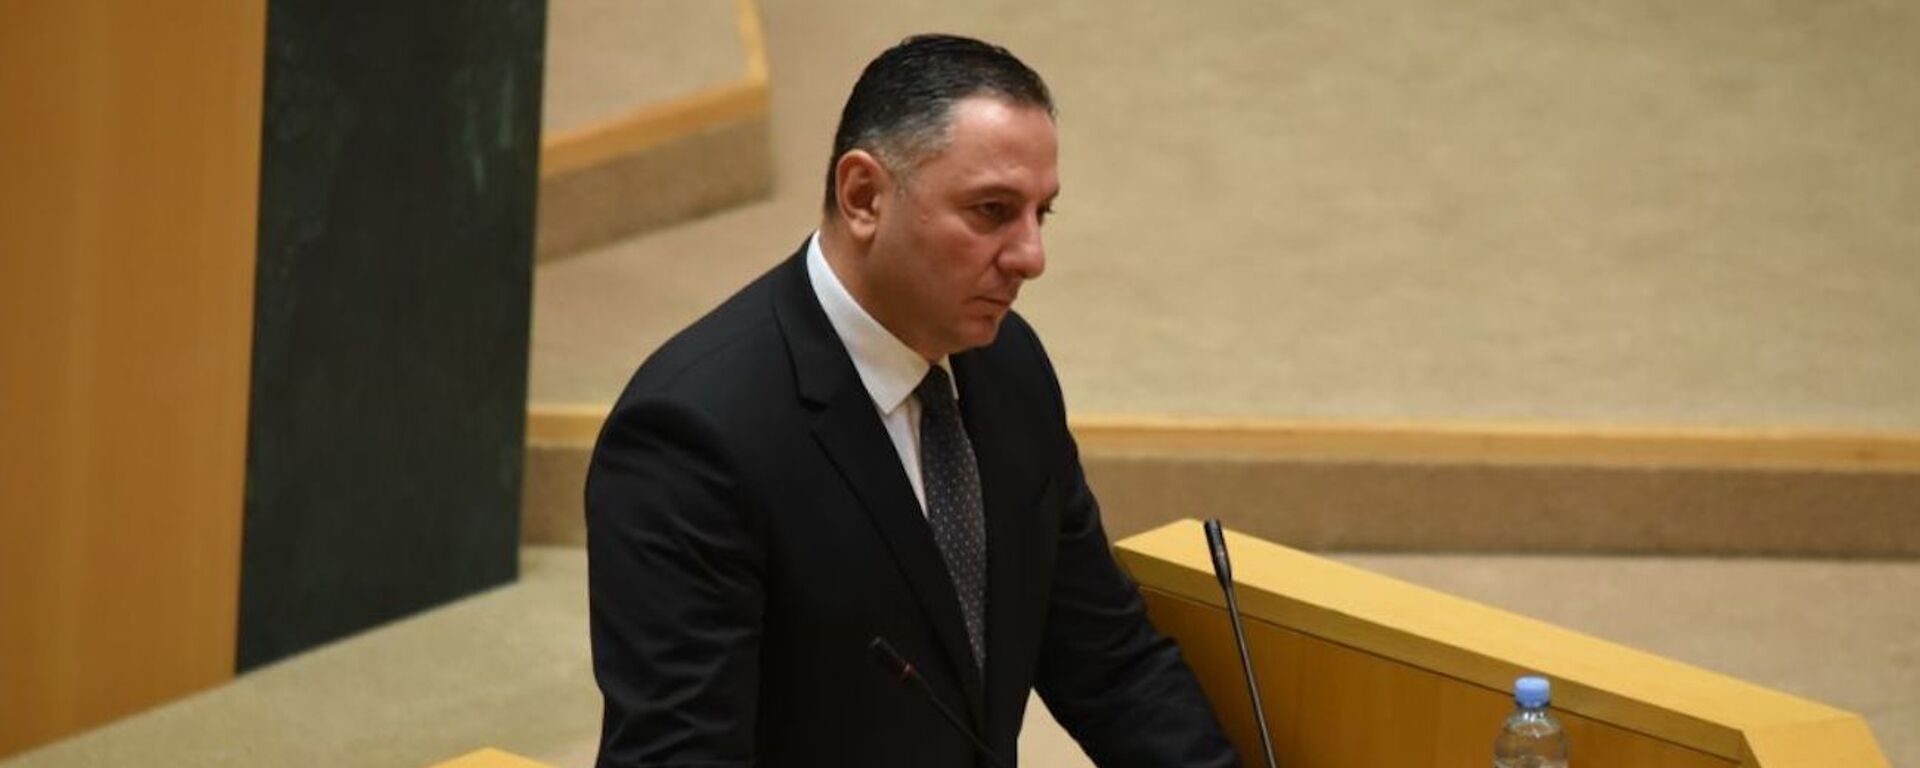 Вахтанг Гомелаури выступает на заседании в Парламенте Грузии 18 июля 2021 года - Sputnik Грузия, 1920, 18.07.2021